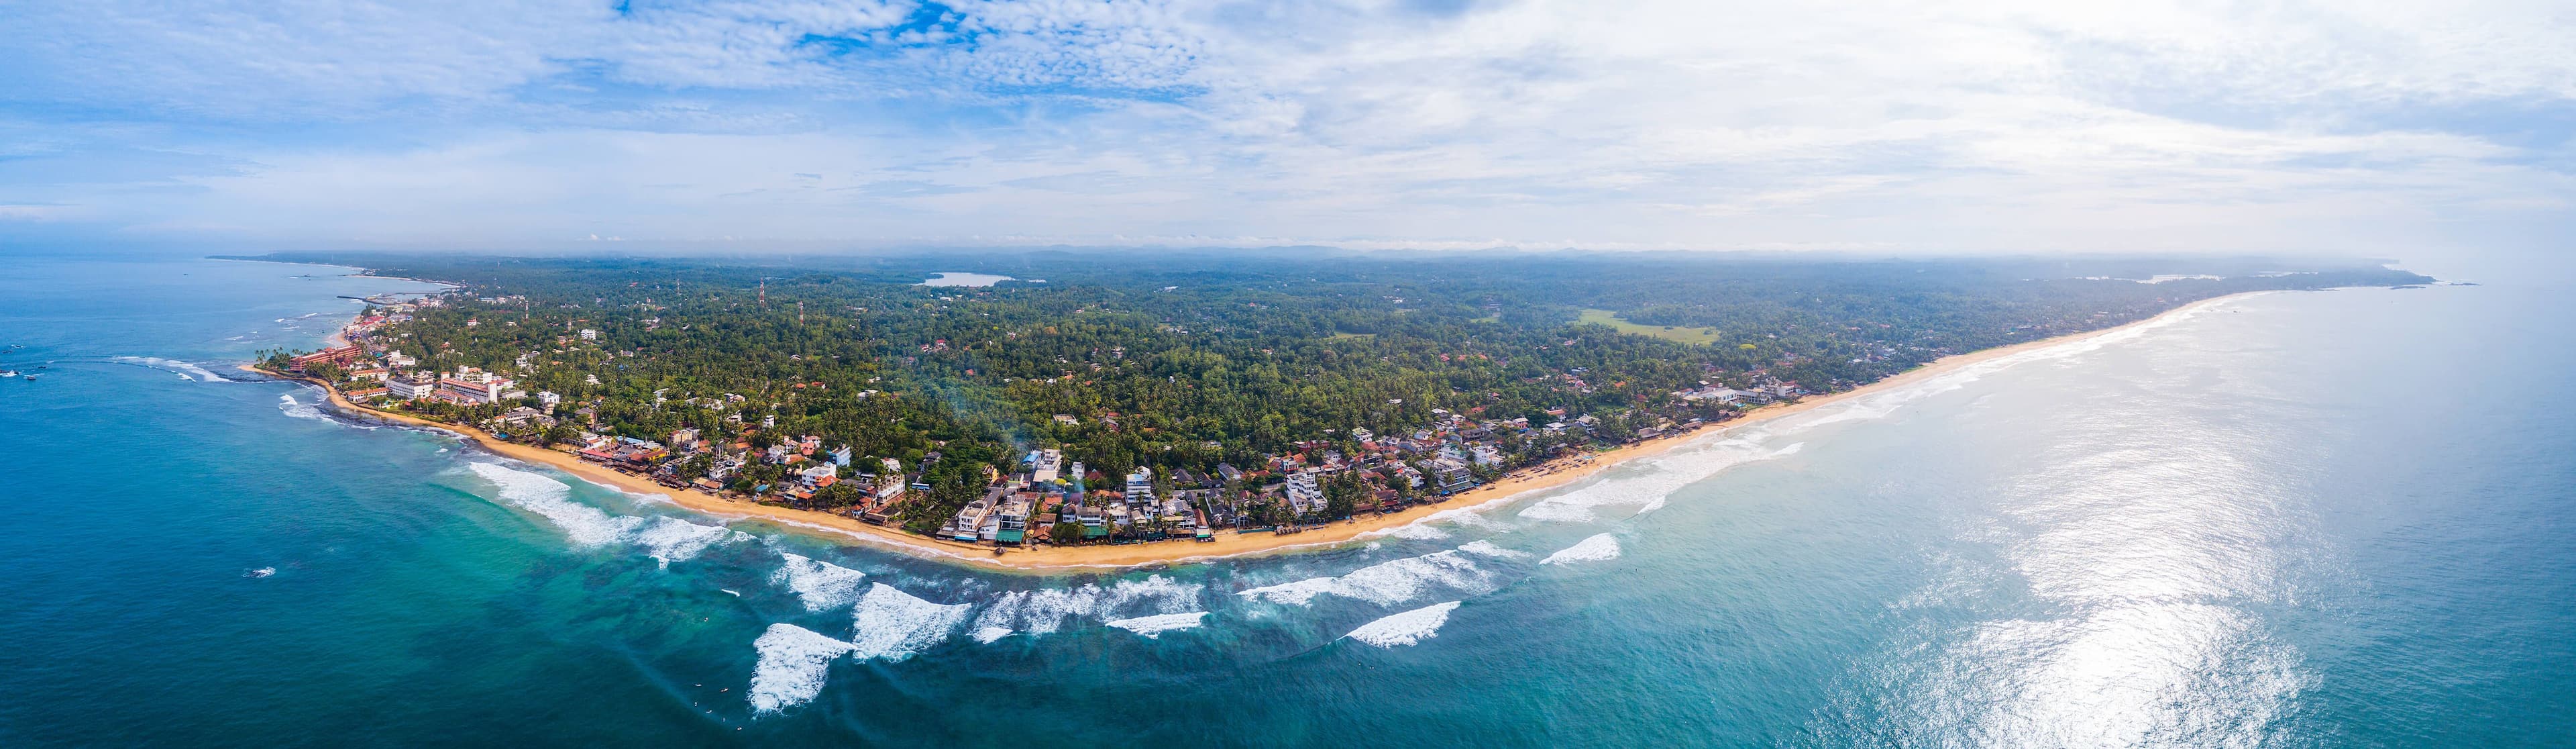 منظر جوي لمدينة هيكادوا بشواطئها ، سريلانكا.